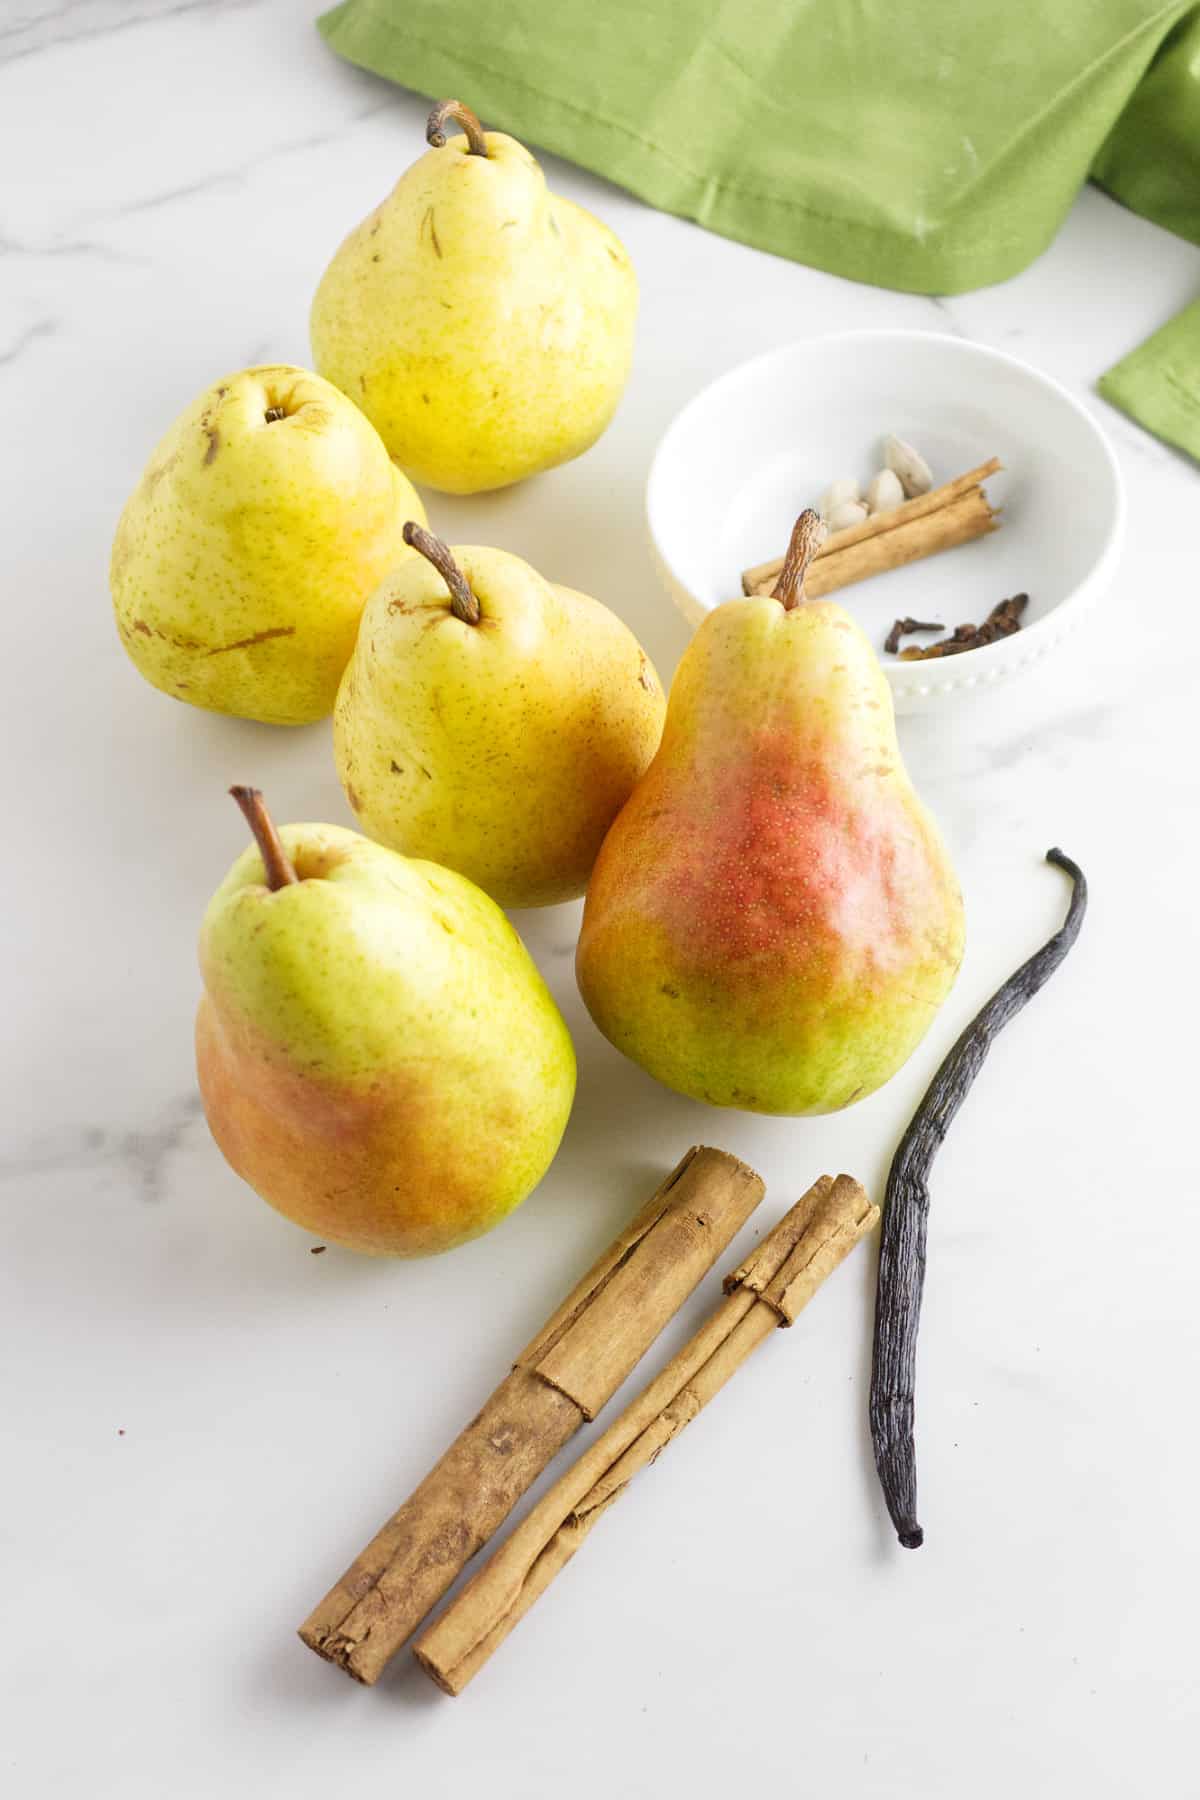 ingredients for cinnamon stewed pears.